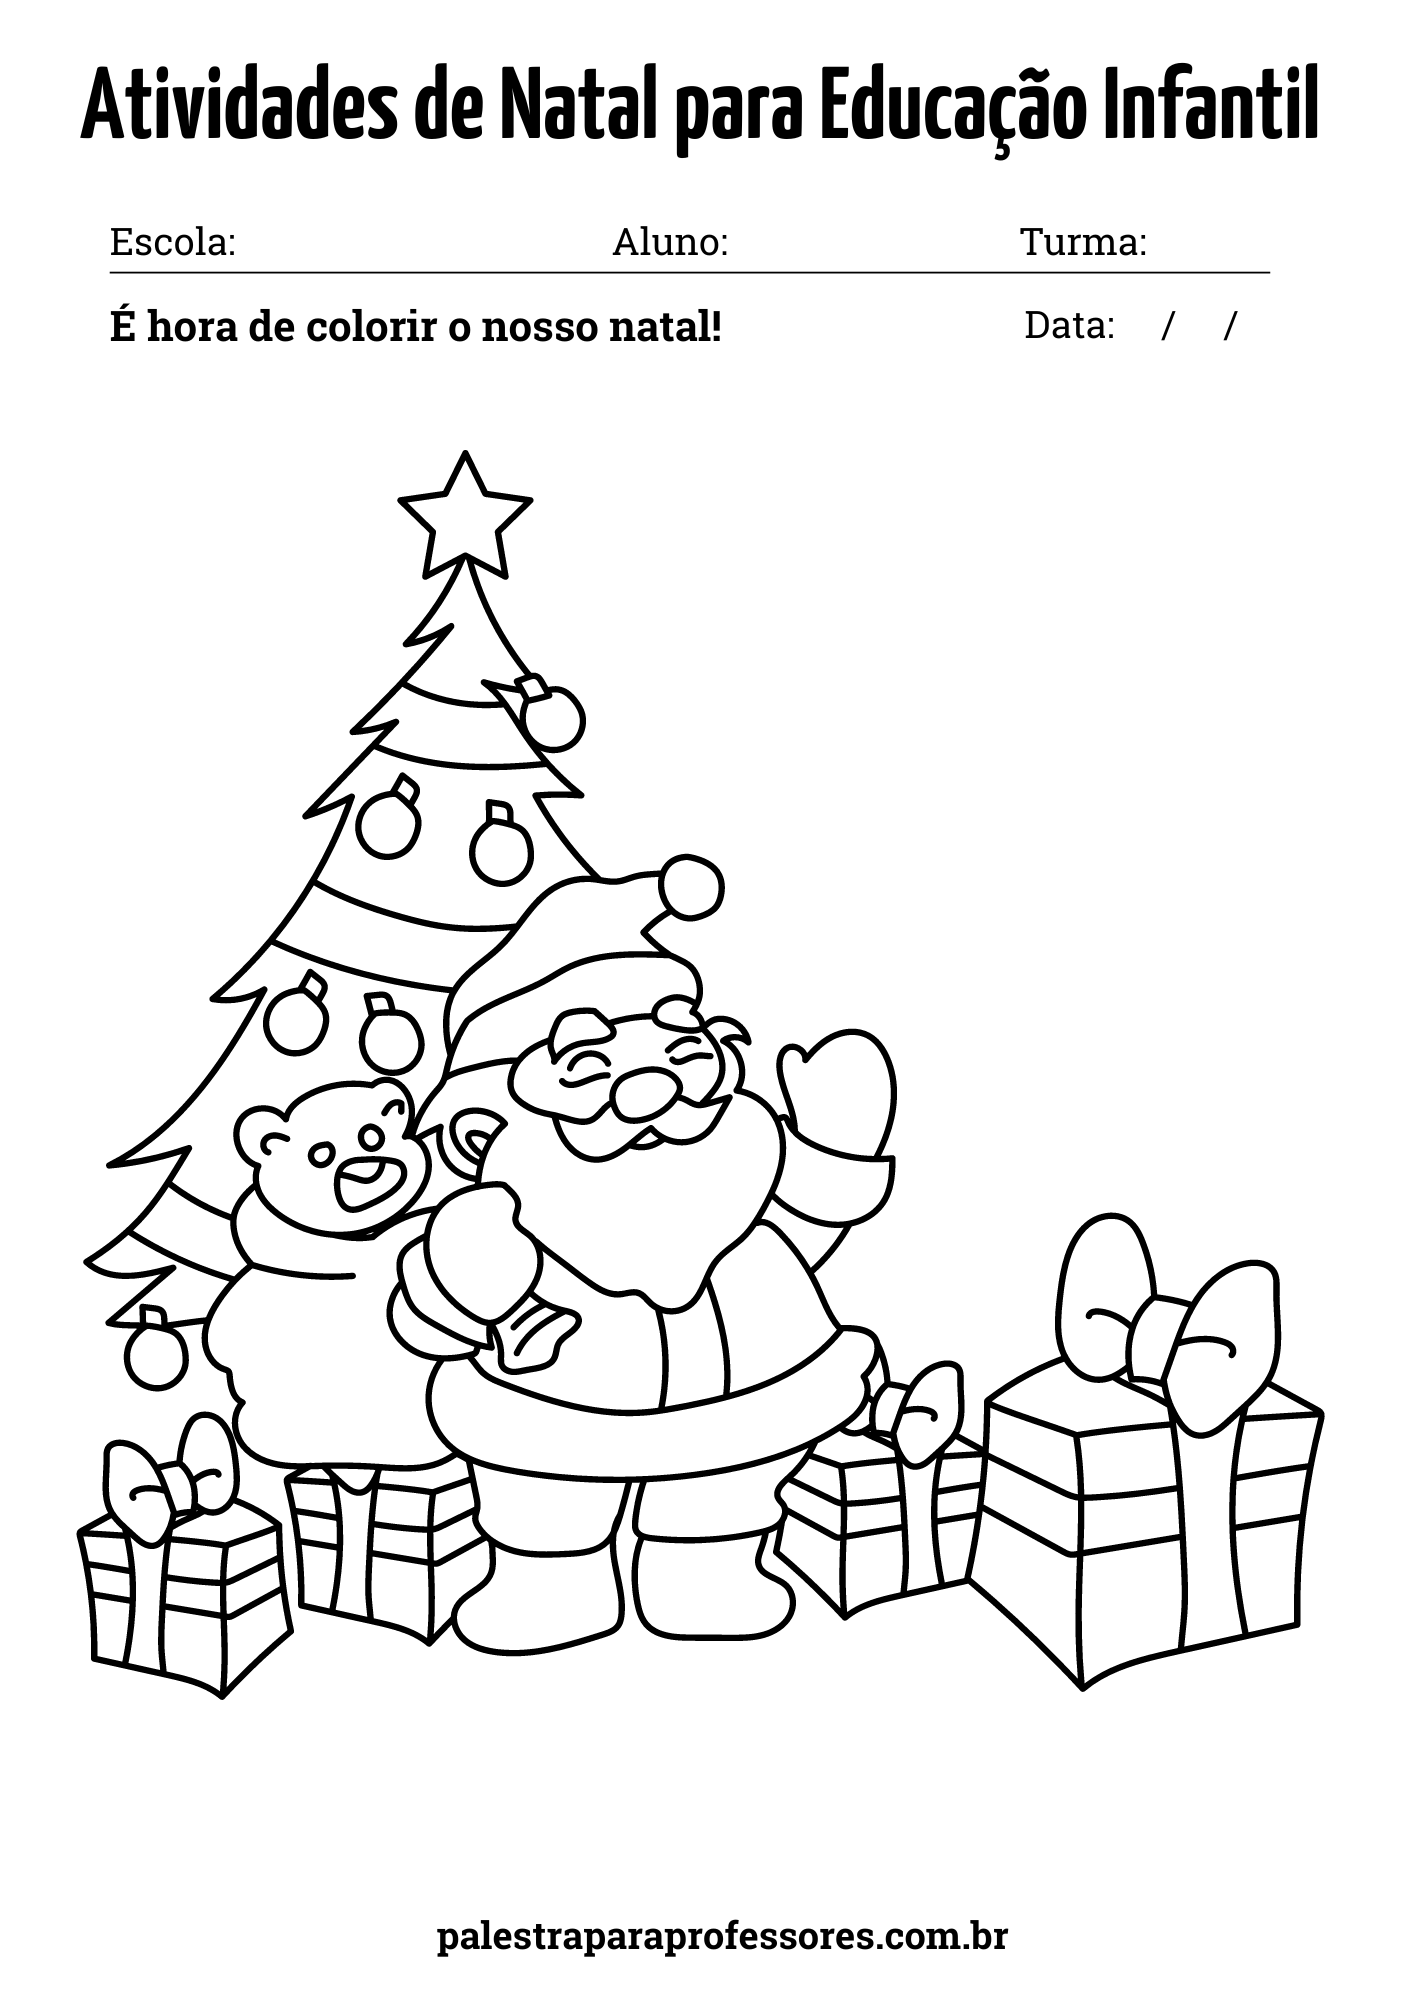 Atividades de Natal para Educação Infantil: 33 desenhos de Natal!